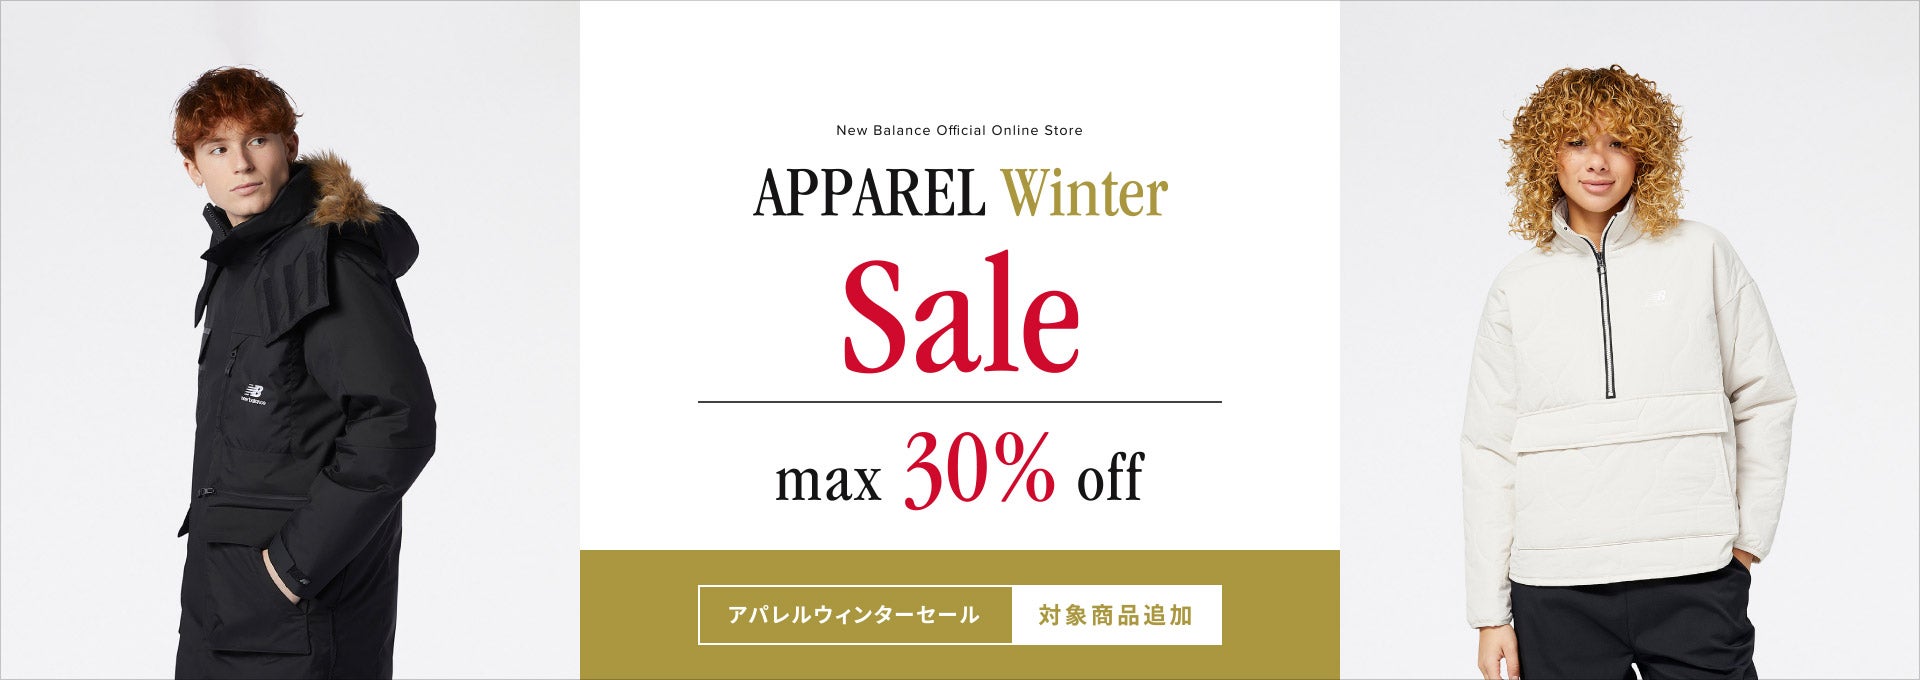 Apparel Winter Sale, Max 30% Off